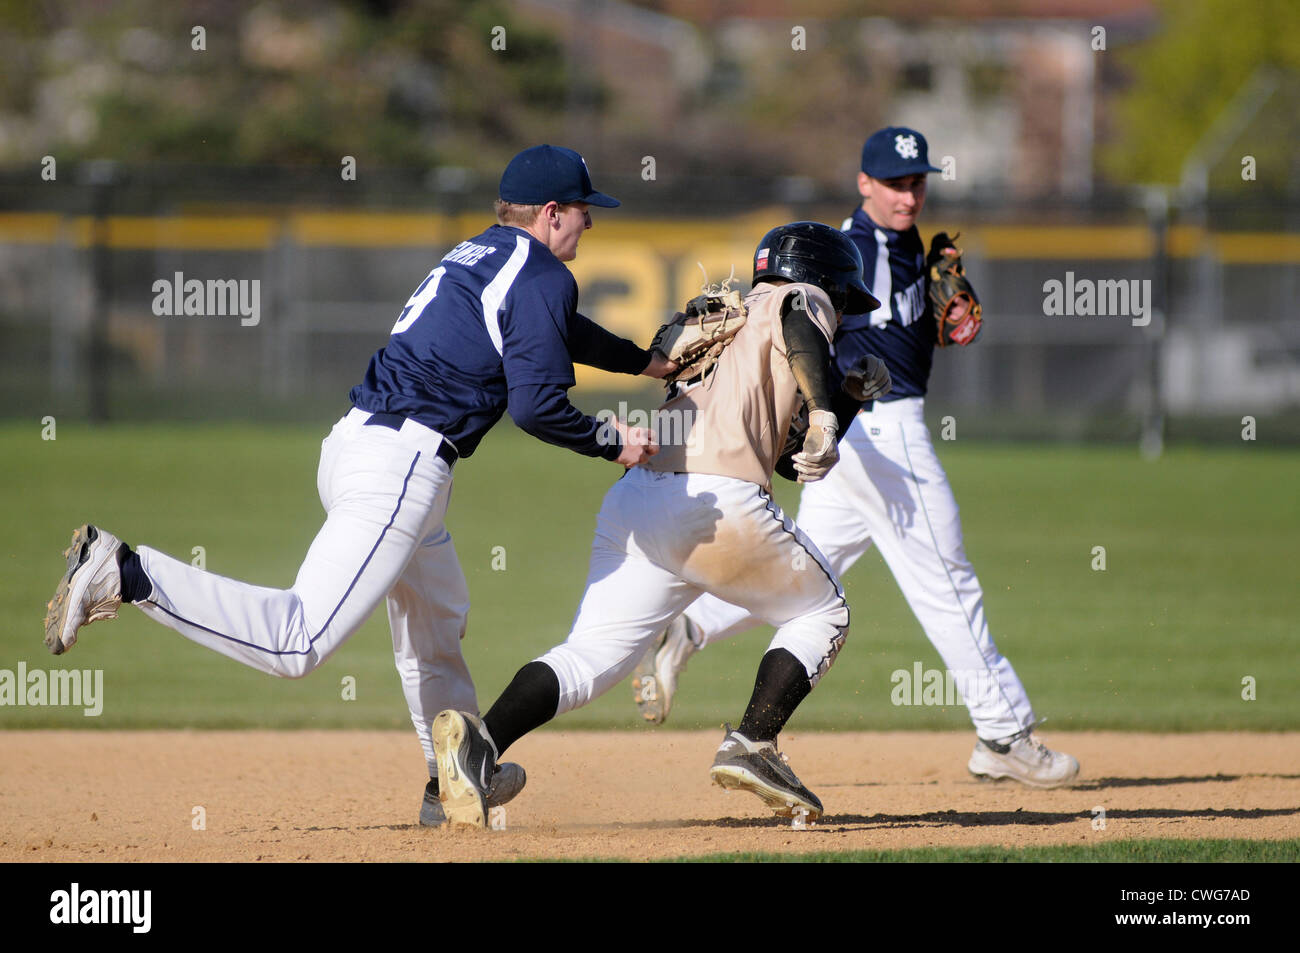 Baseball third baseman tags base runner between second and third base high school baseball game. USA. Stock Photo